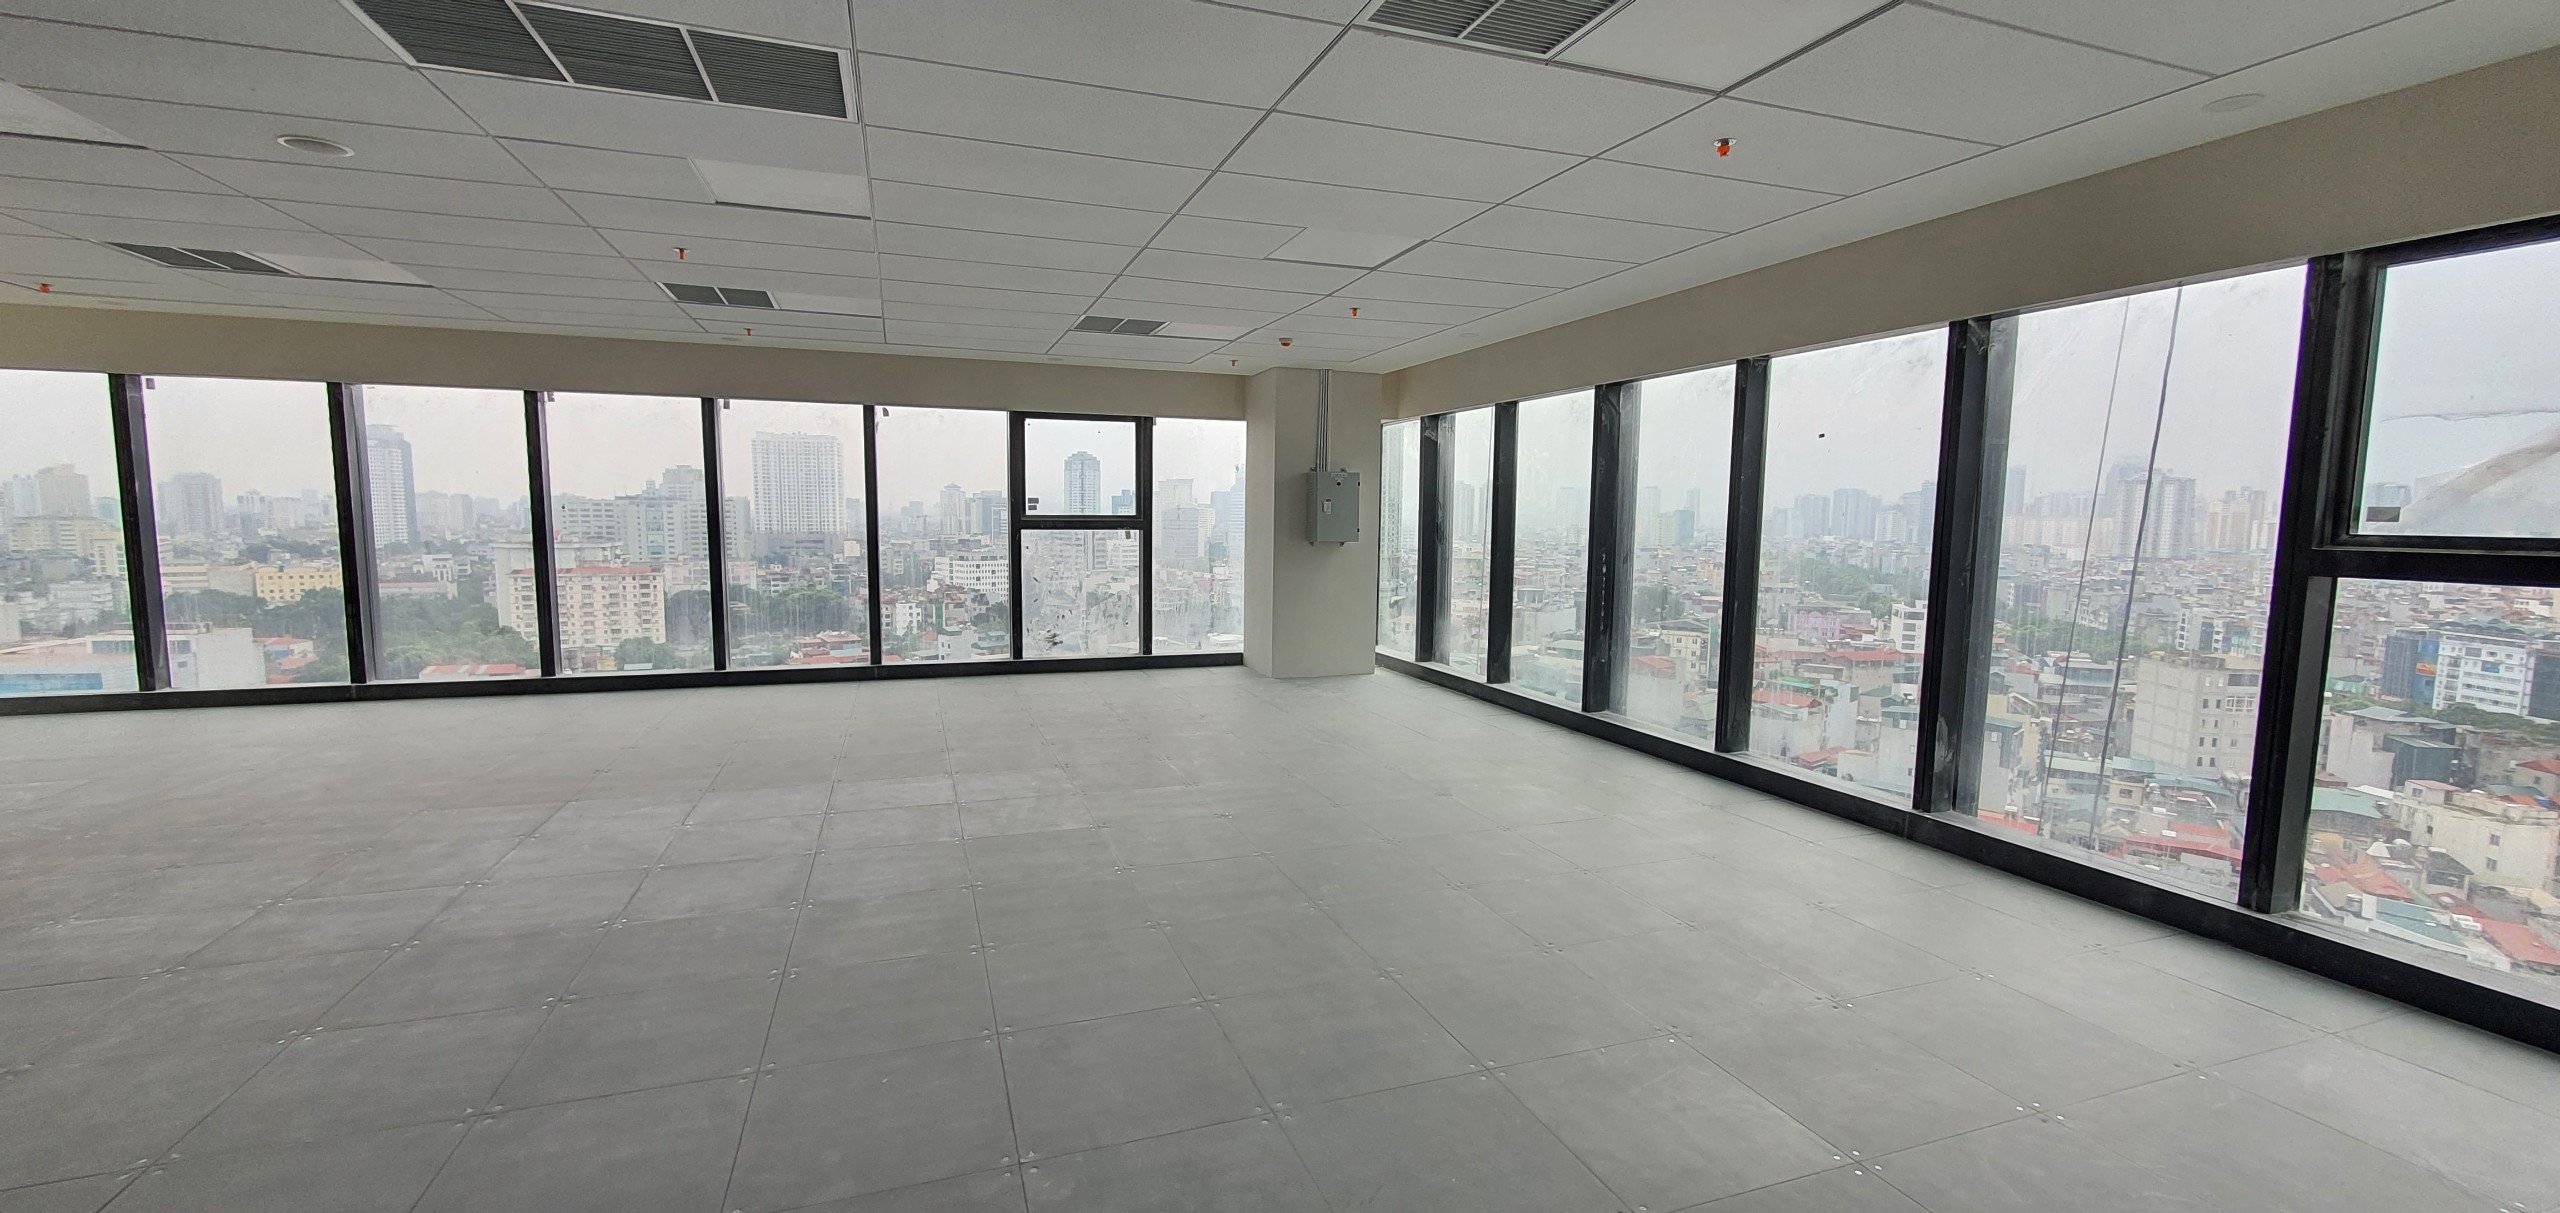 Cho thuê Văn phòng dự án VCCI Tower - số 9 Đào Duy Anh, Diện tích 1400m², Giá 500 Nghìn/m²/tháng 4